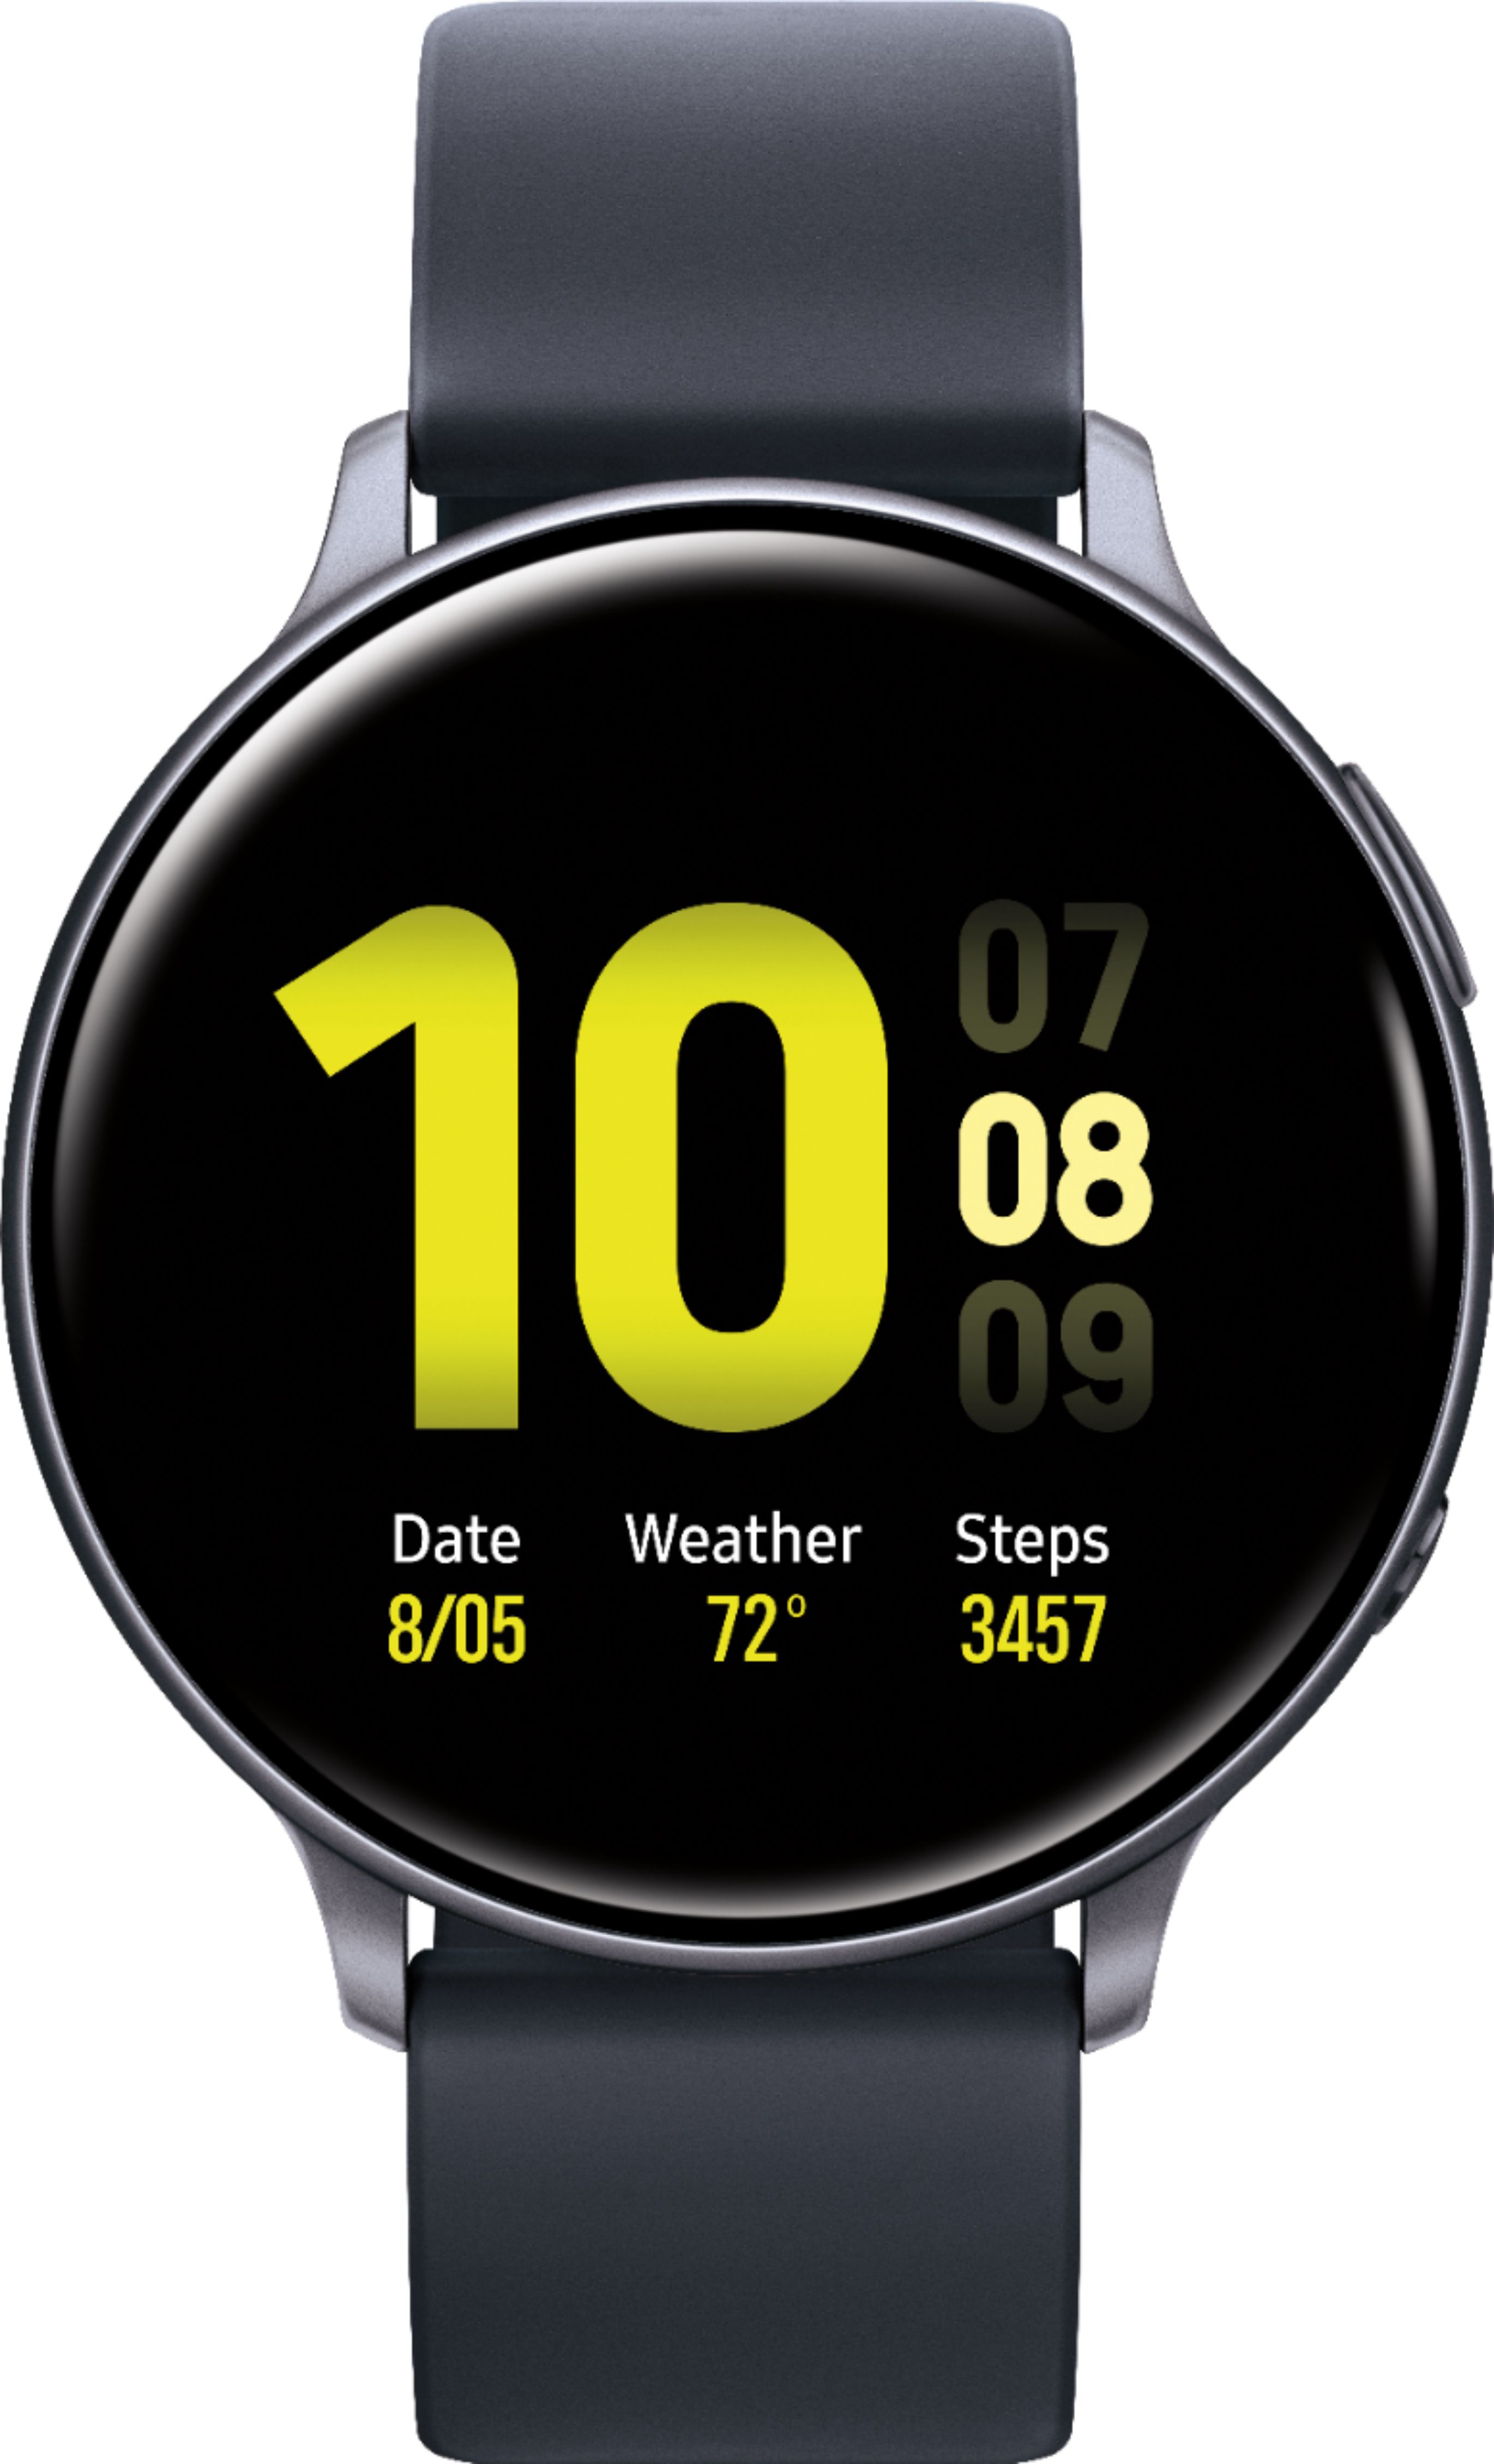 Galaxy Watch Newest Top Sellers, 54% OFF | www.gruposincom.es